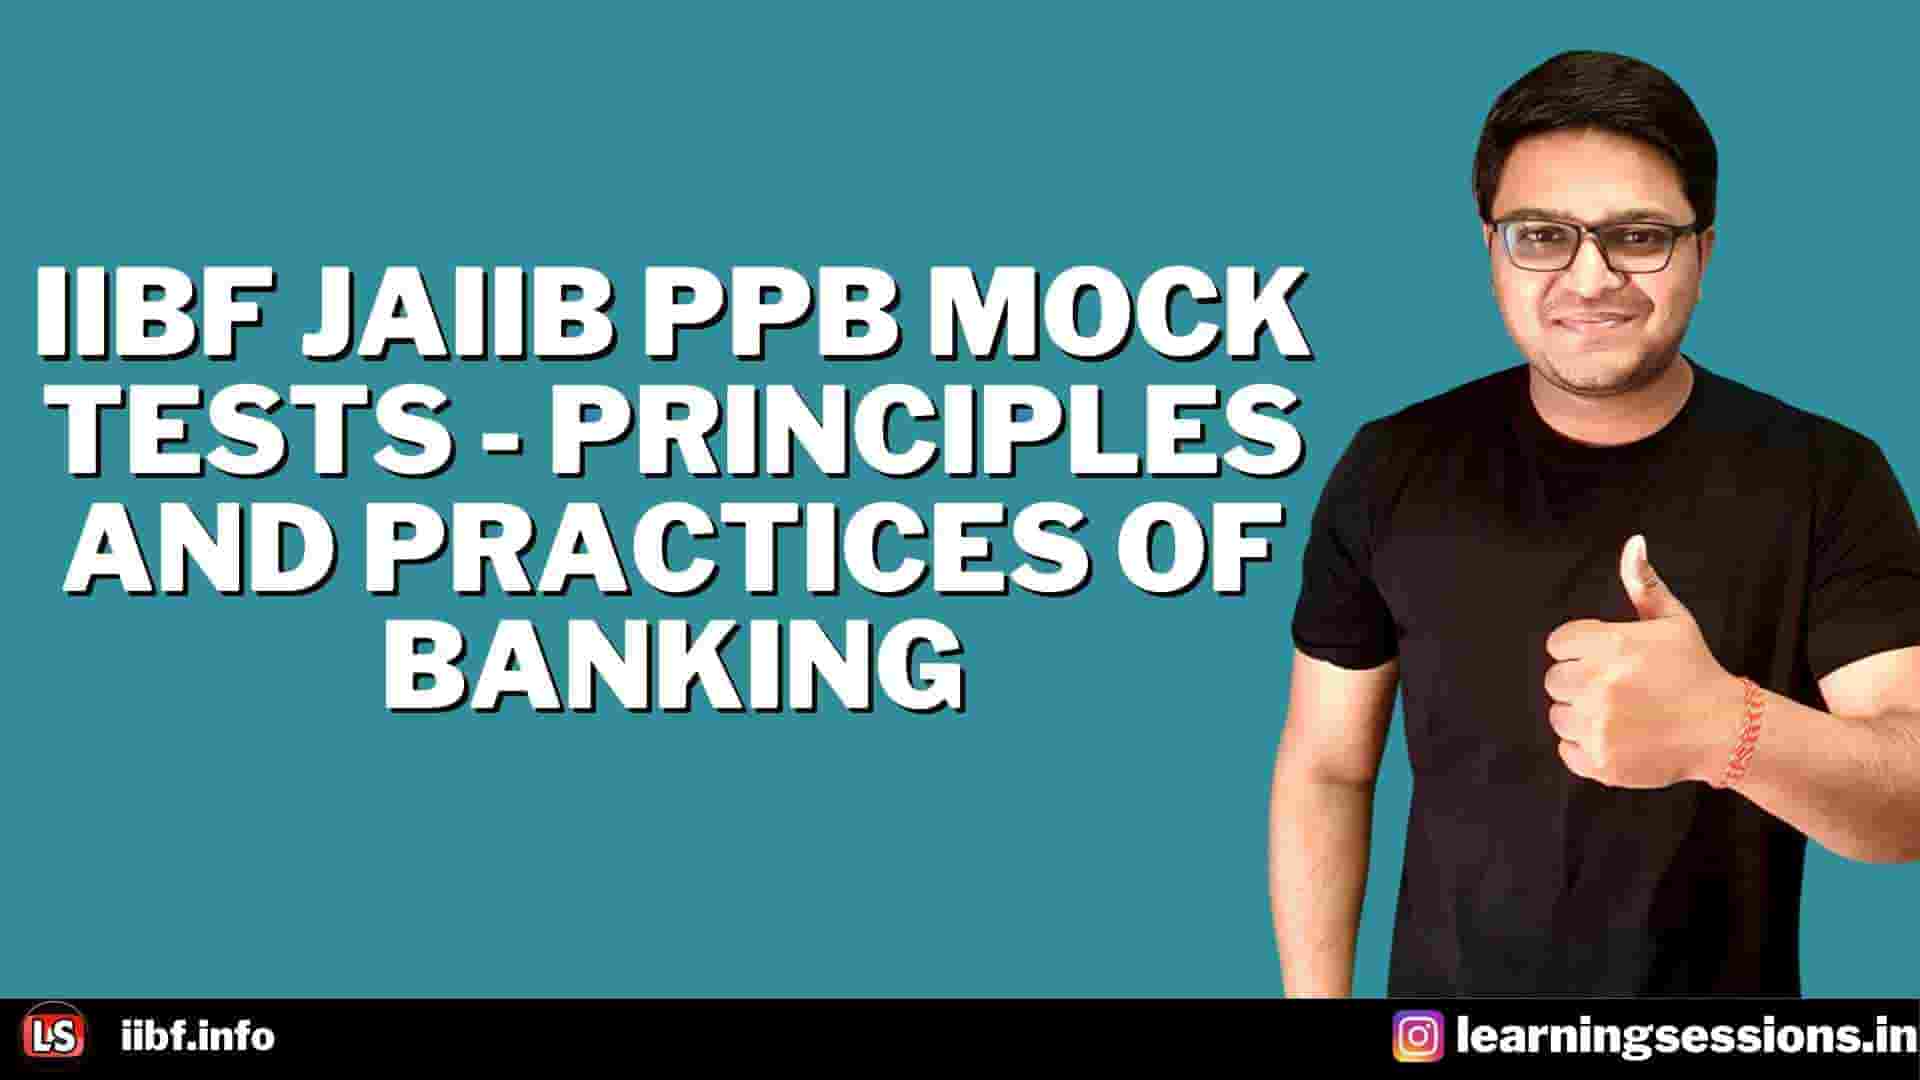 IIBF JAIIB PPB MOCK TESTS - Principles and Practices of Banking